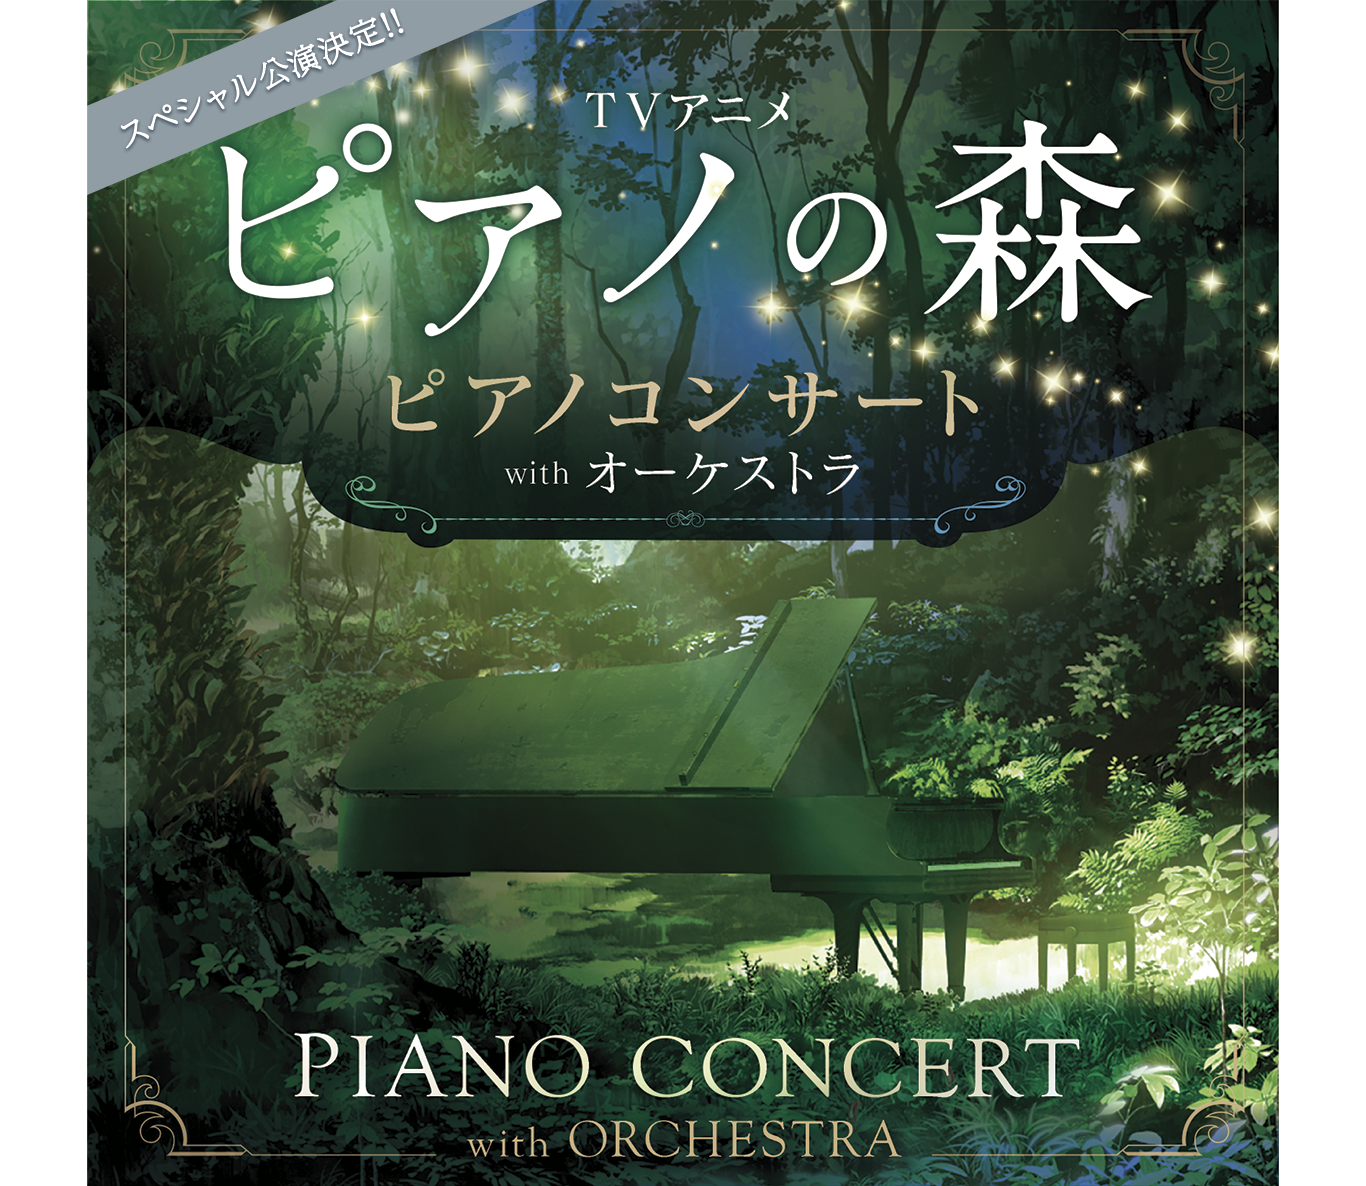 スペシャル公演決定!!TVアニメ「ピアノの森」ピアノコンサート PIANO CONCERT